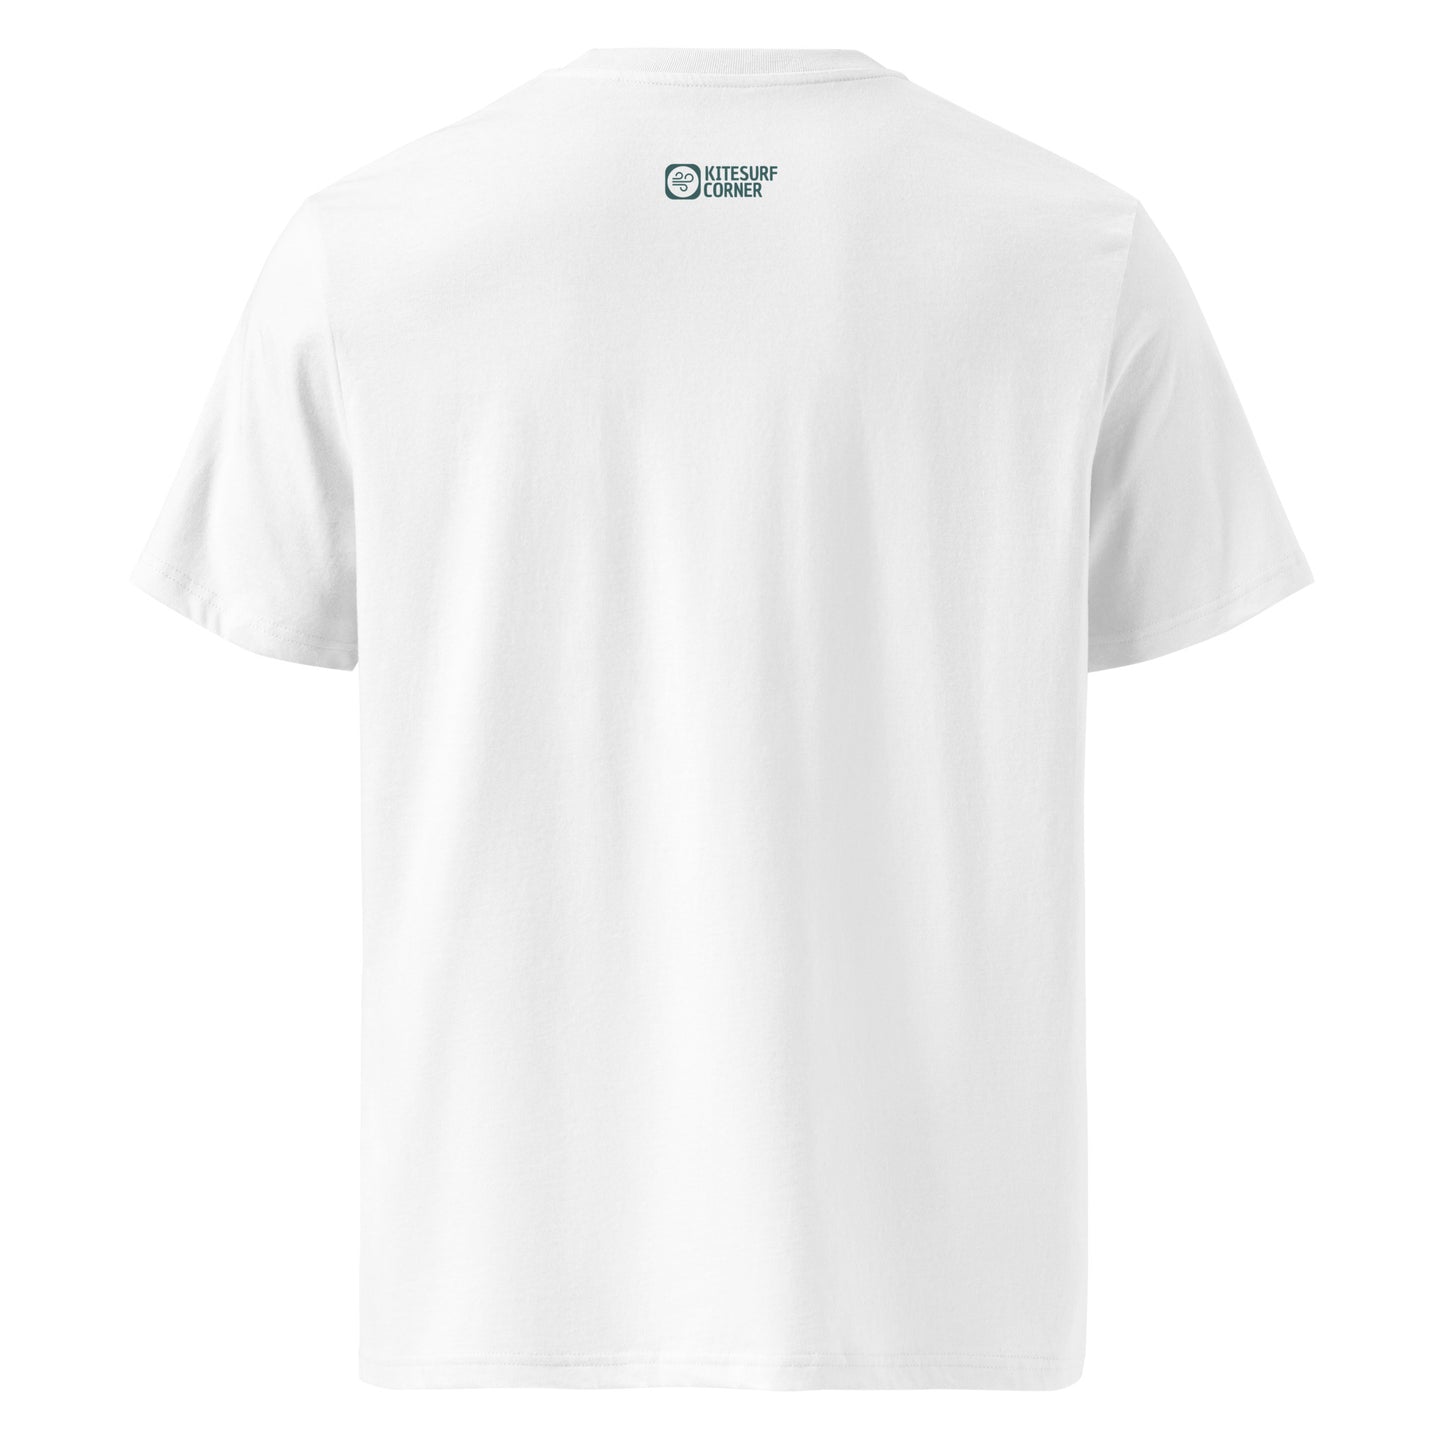 T-Shirt Kitesurf "Born to Kiteloop"